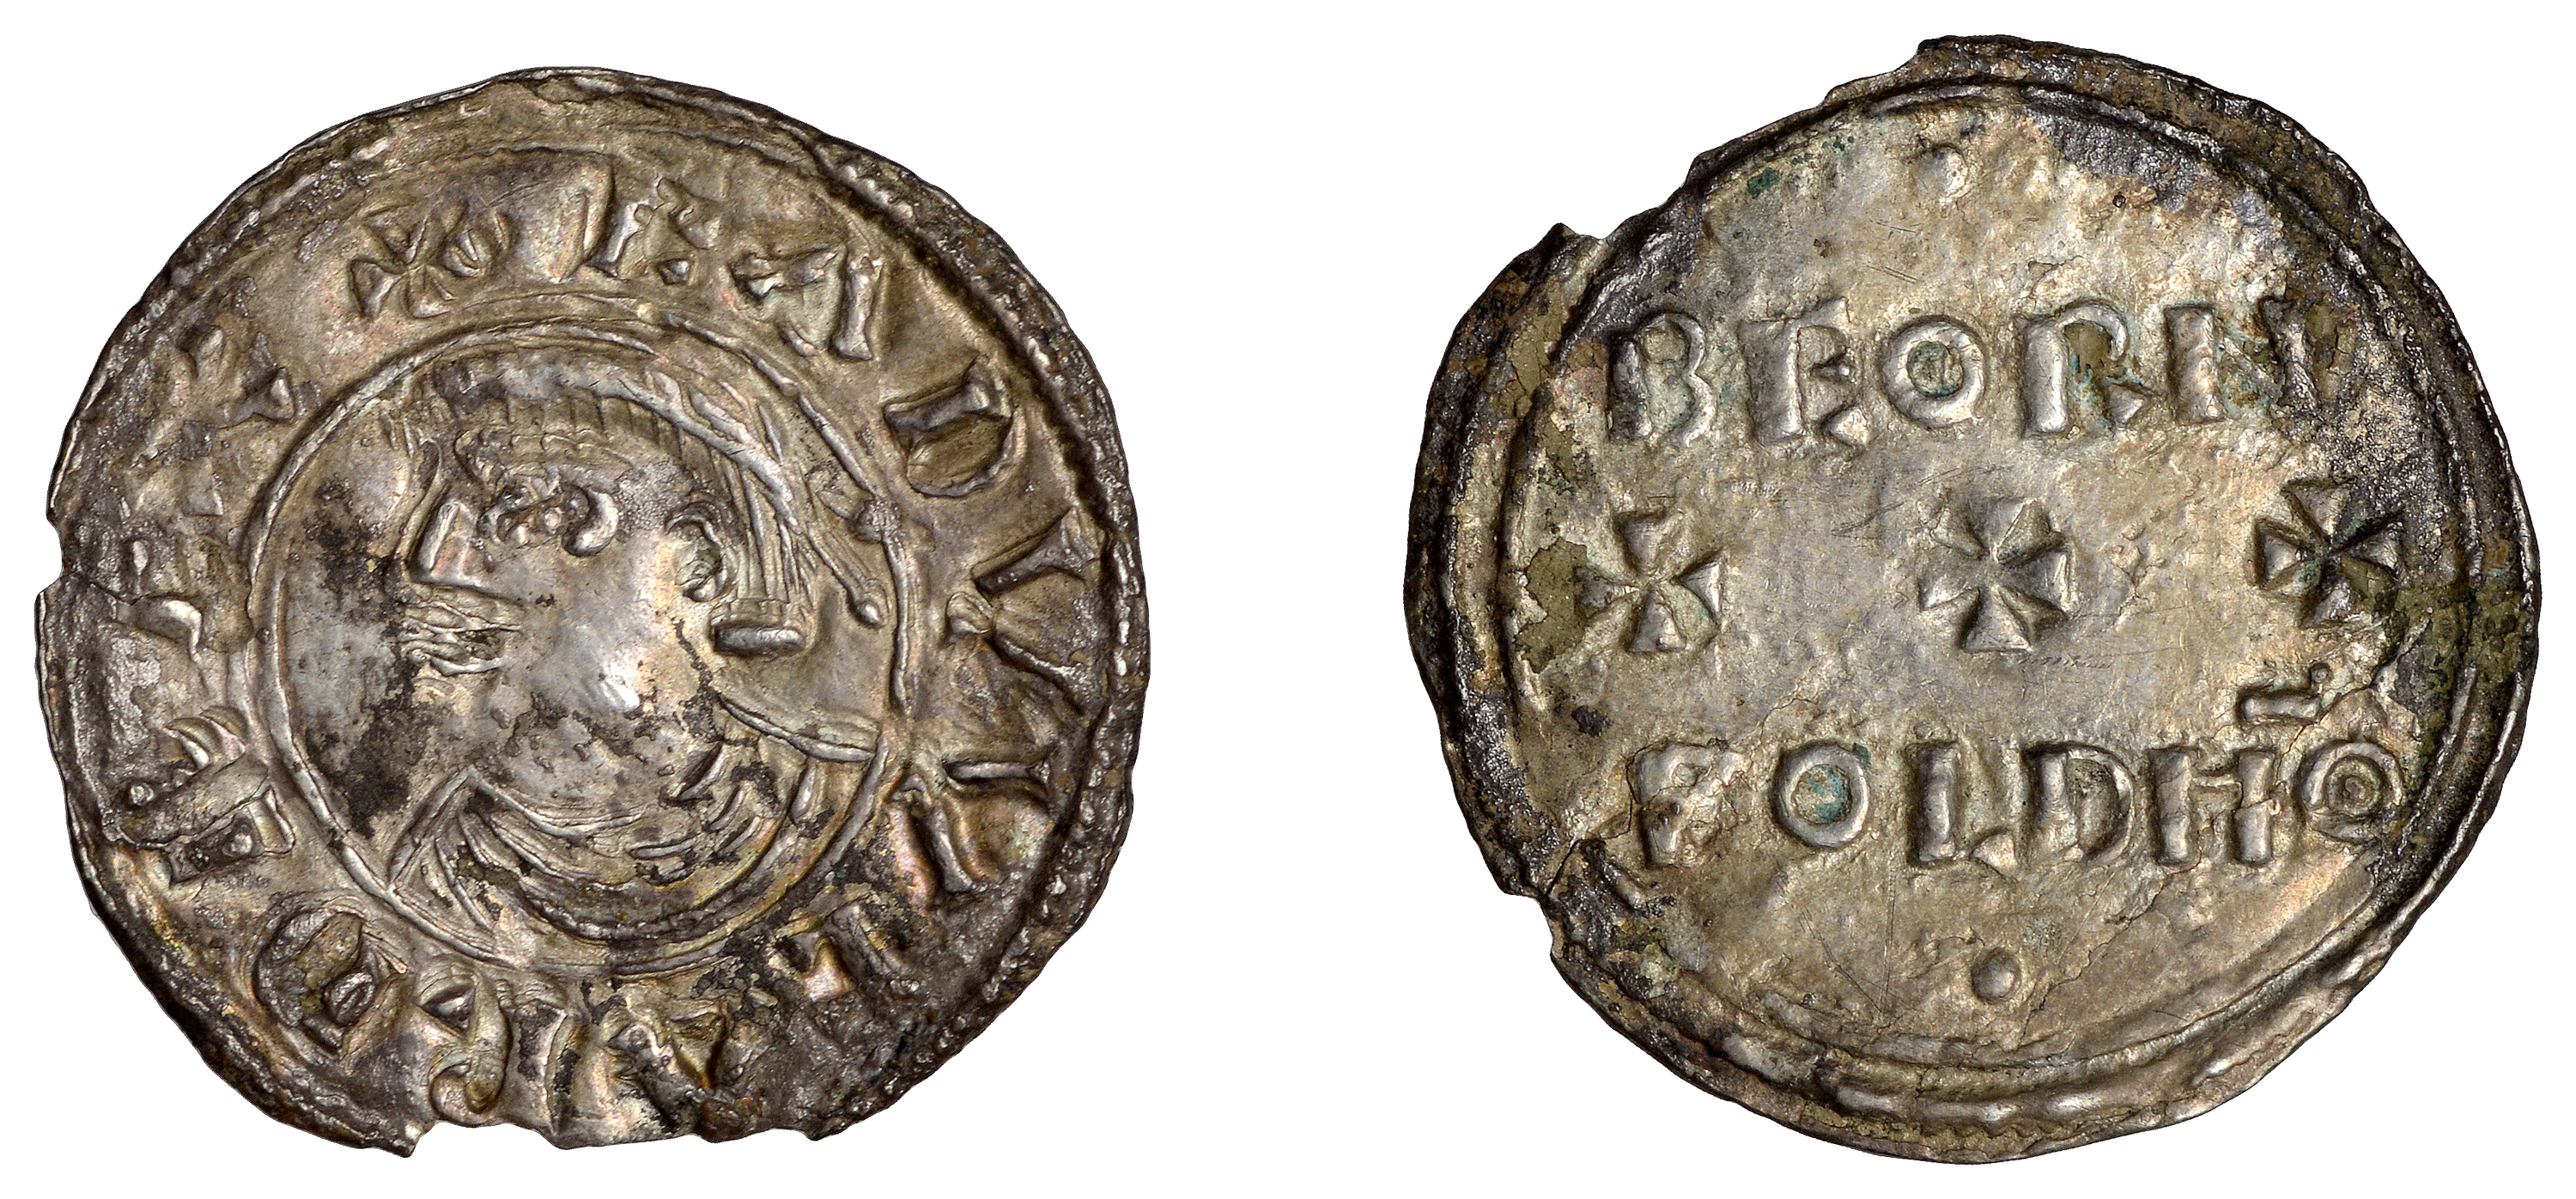 Edward the Elder (899-924), Penny, Portrait type [HP 1, Winchester], Beornwold, eadvveard re...